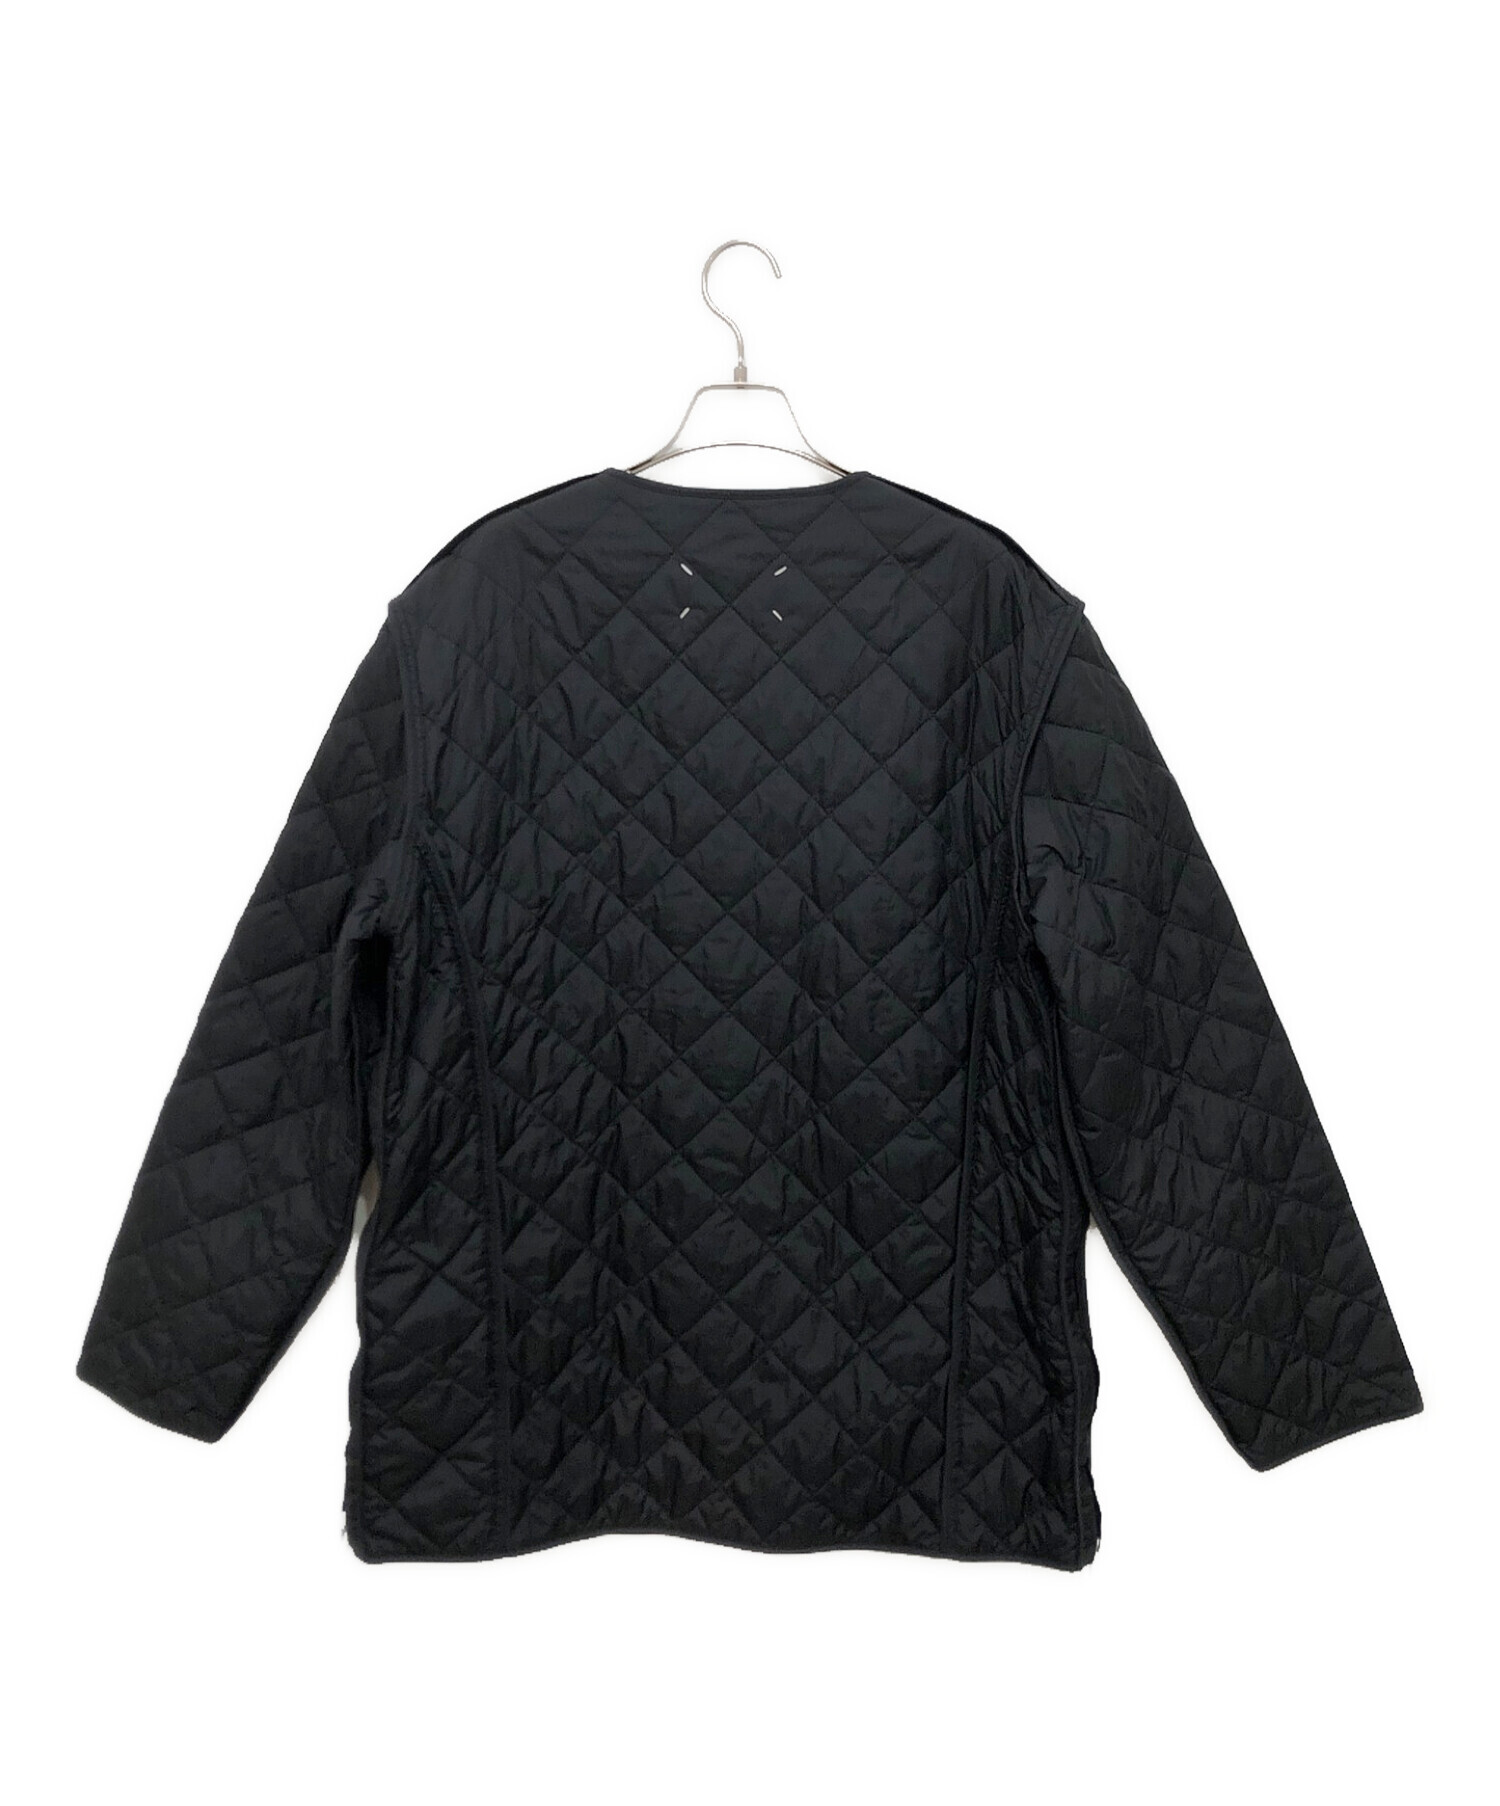 Maison Margiela (メゾンマルジェラ) キルティングジャケット ブラック サイズ:44